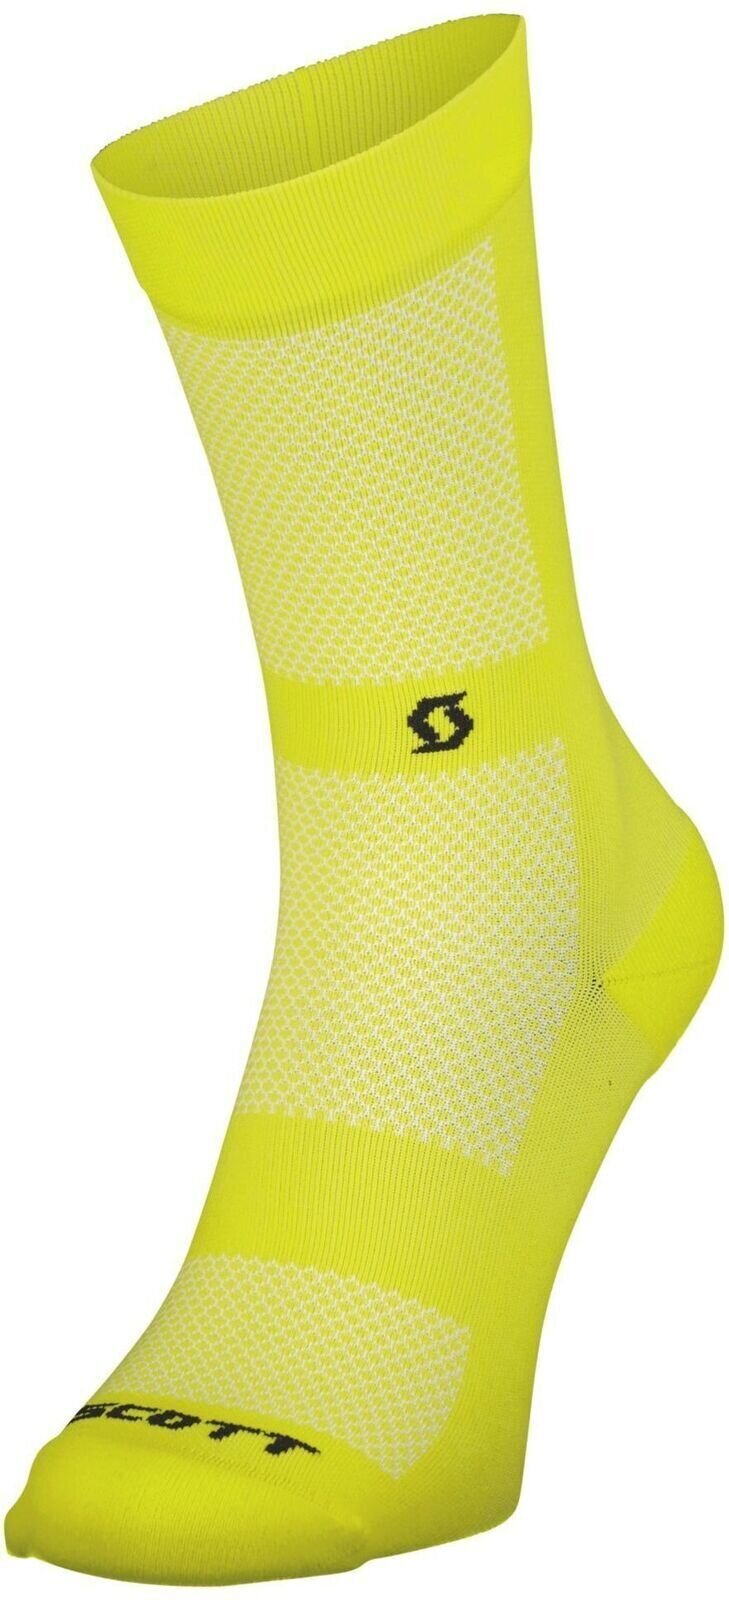 Cyklo ponožky Scott Performance No Shortcuts Crew Socks Sulphur Yellow/Black 45-47 Cyklo ponožky